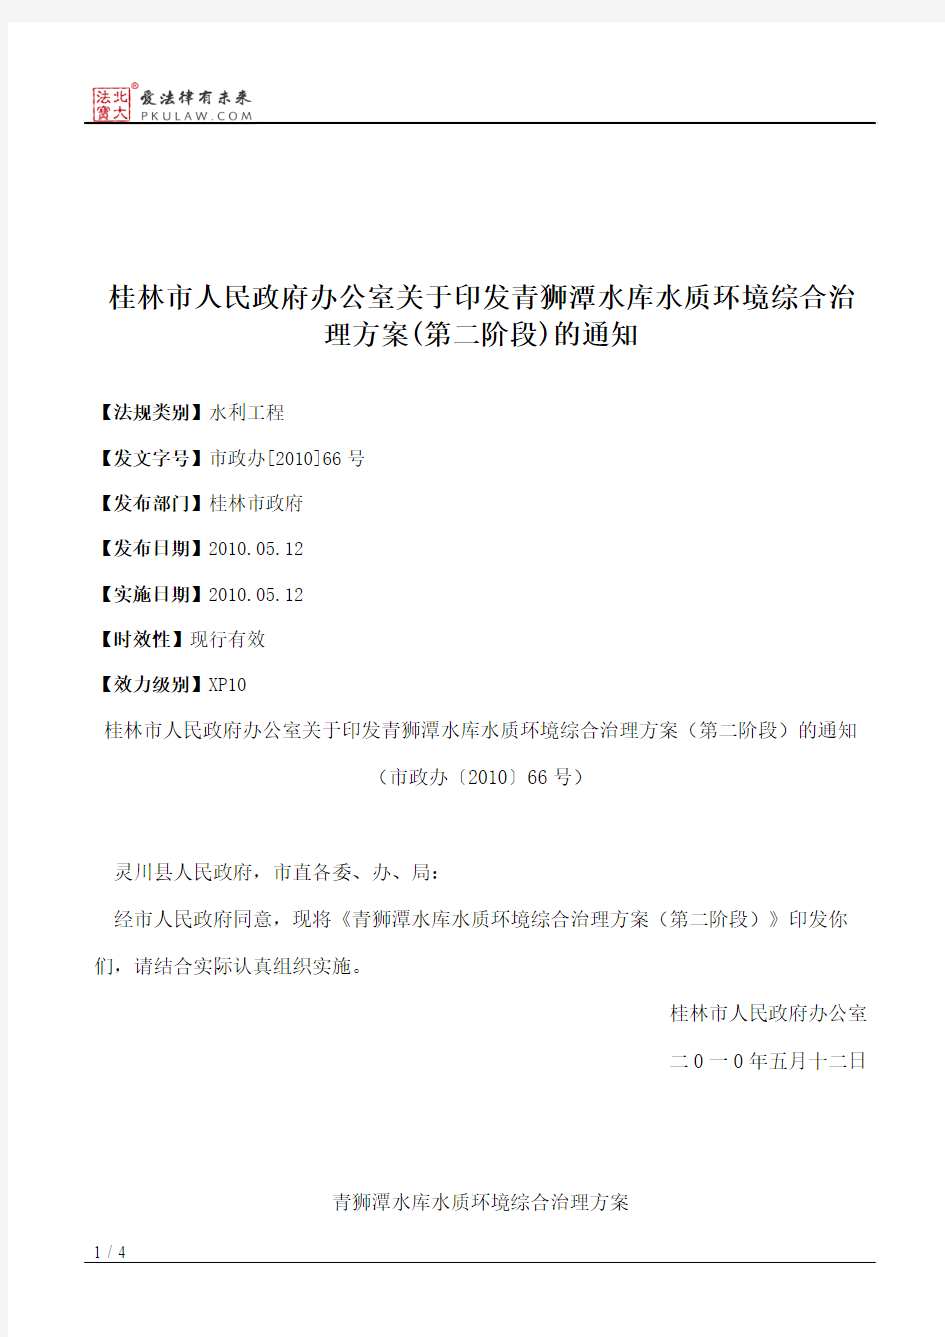 桂林市人民政府办公室关于印发青狮潭水库水质环境综合治理方案(